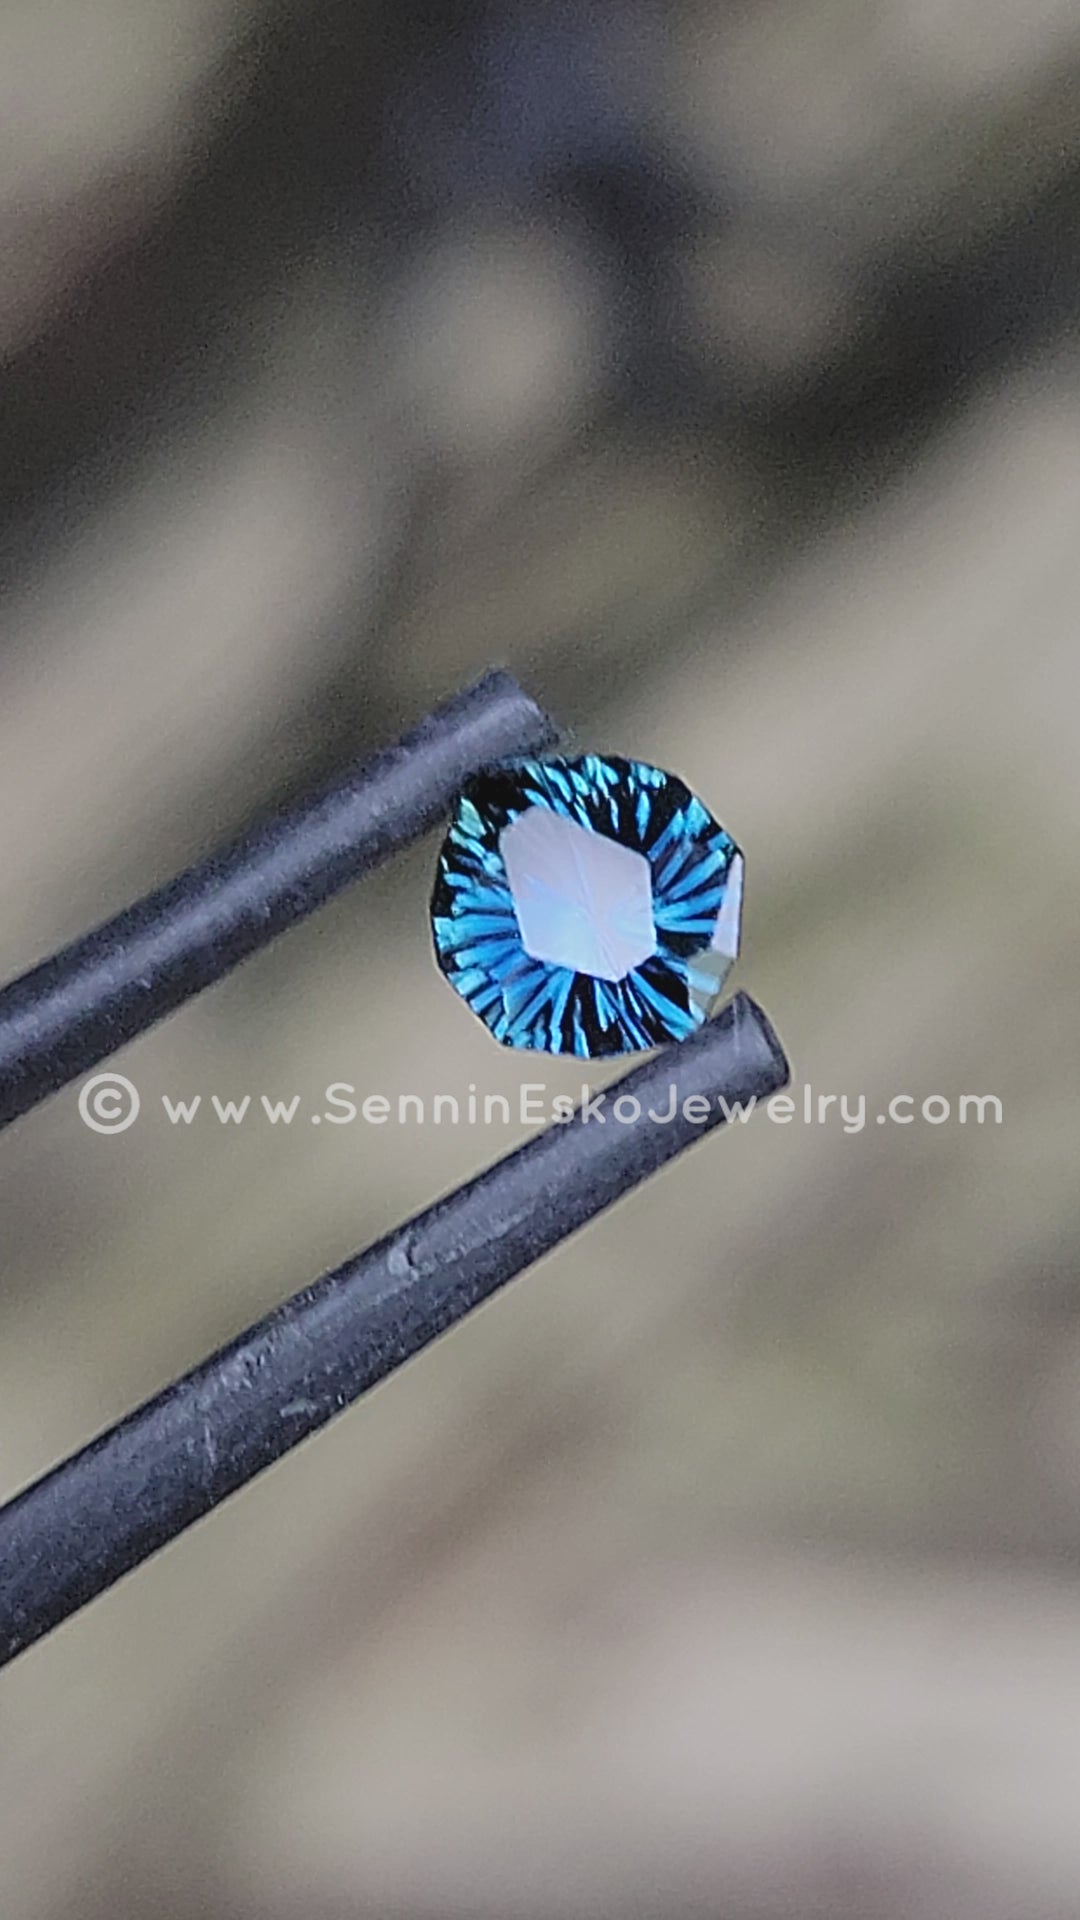 0.91 Carat Deep Blue Sapphire Unusual Tear Drop - 6.7x5.6mm - Galaxy Cut